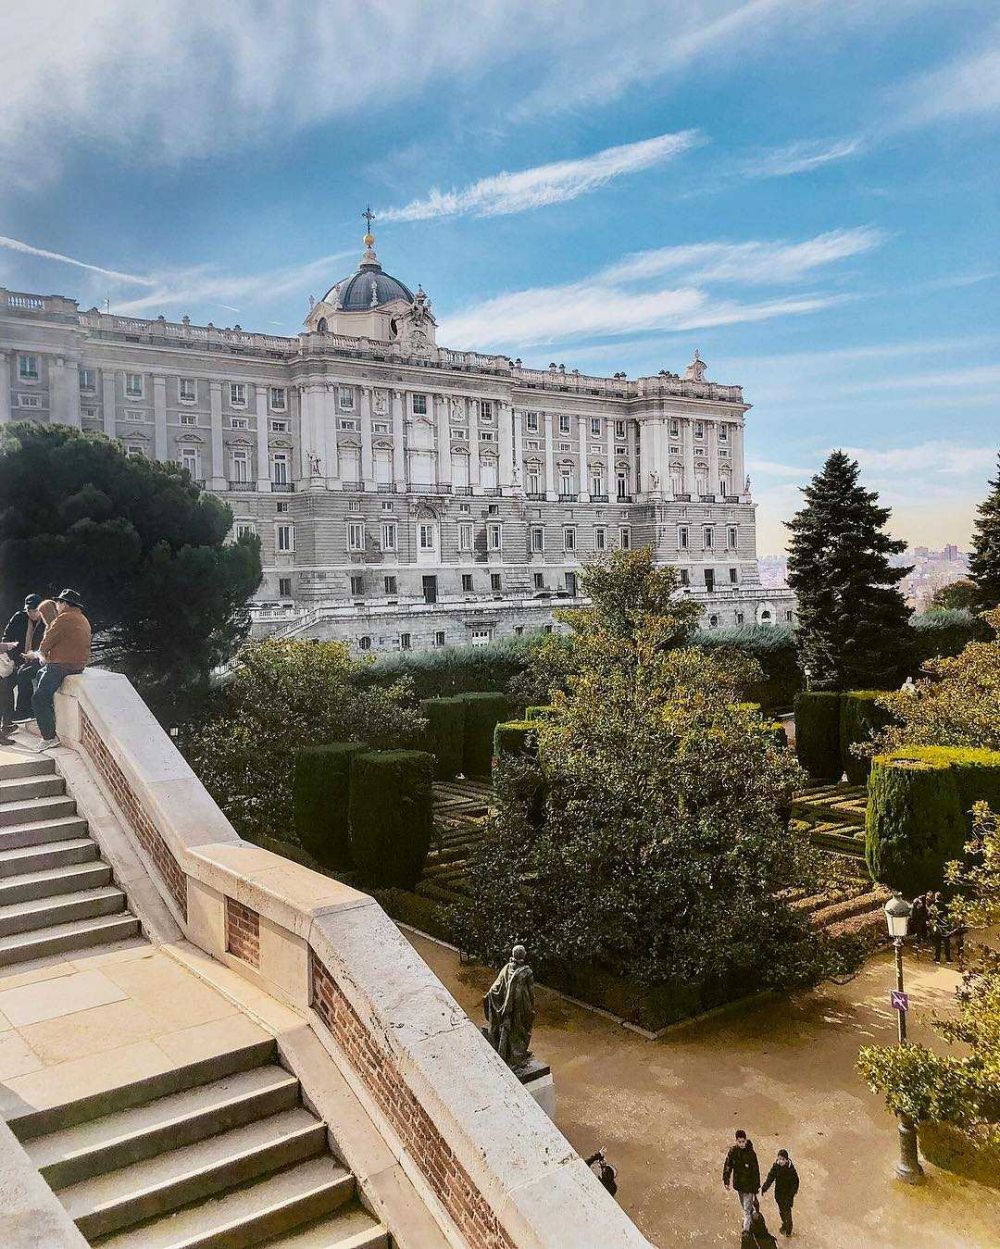 6 Tempat Wisata Terbaik di Madrid-Spanyol, Suasananya Keren!